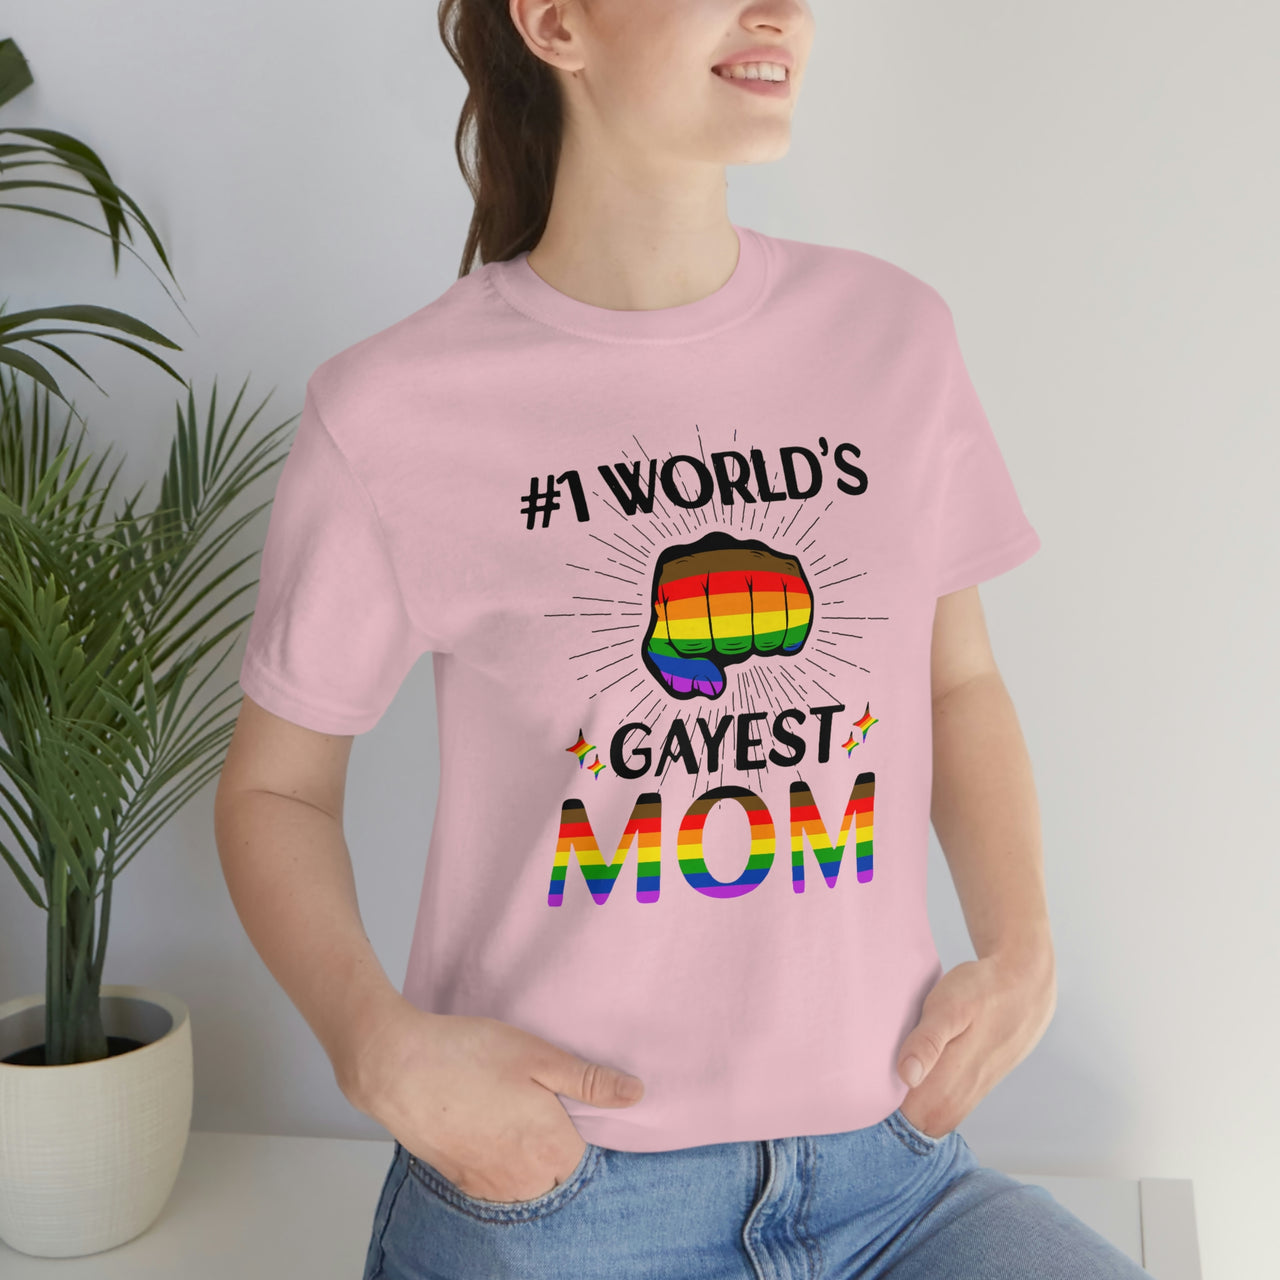 Philadelphia Pride Flag Mother's Day Unisex Short Sleeve Tee - #1 World's Gayest Mom SHAVA CO